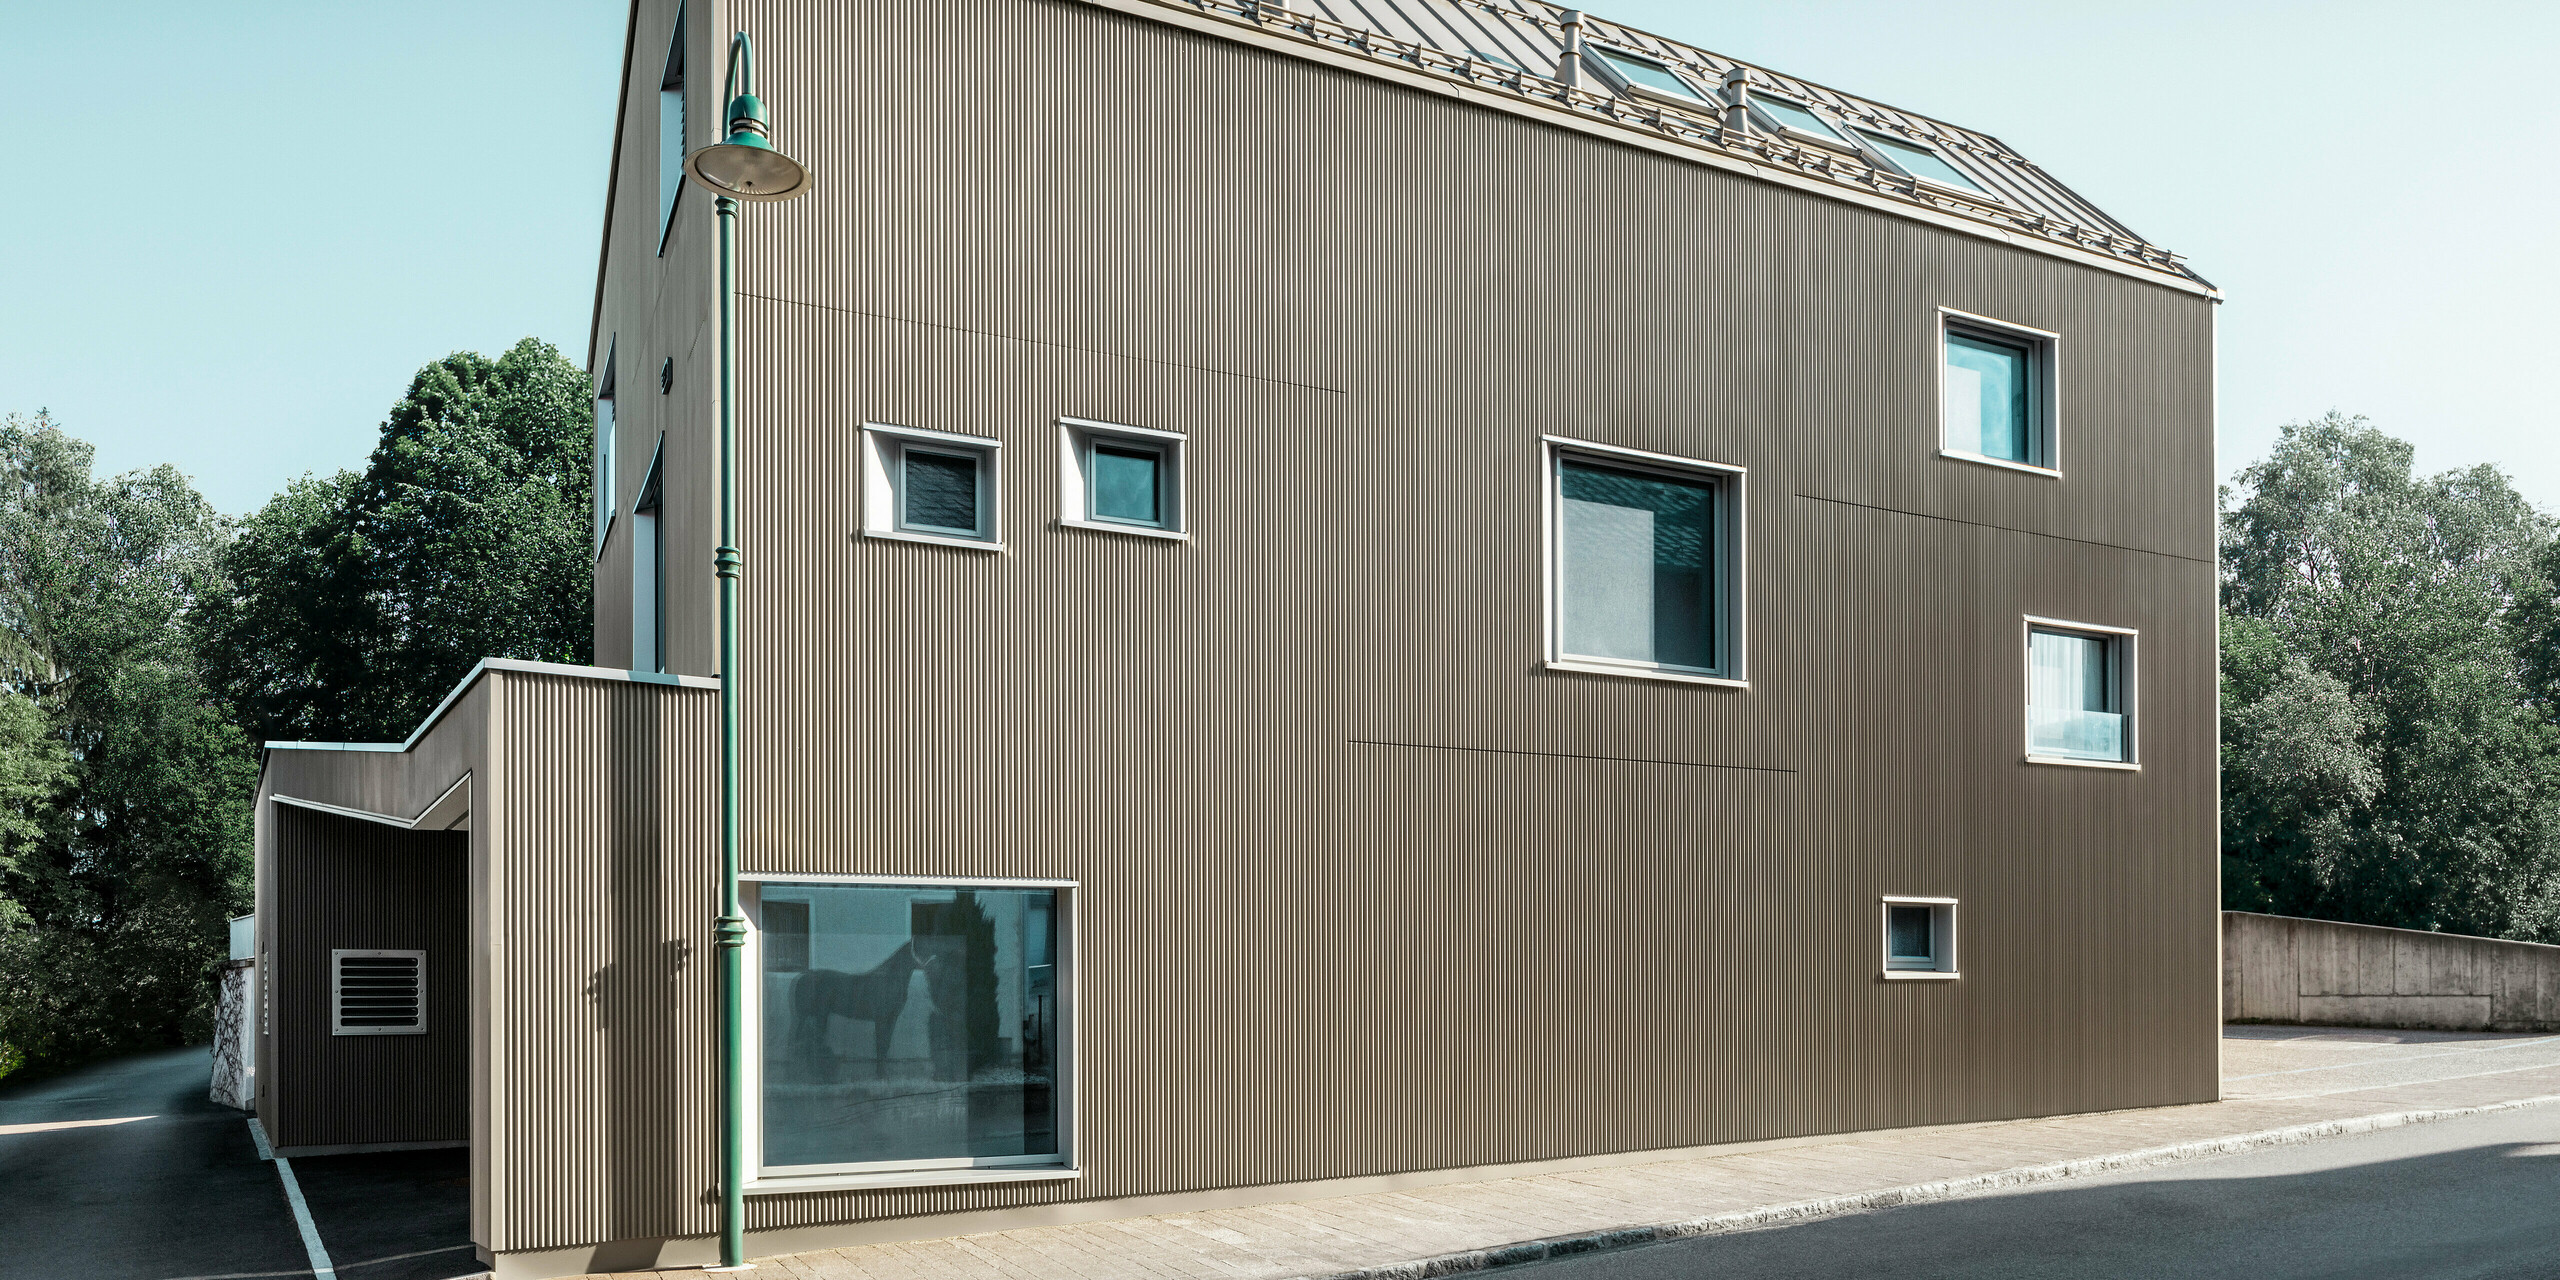 Blick von der Straße auf ein zweistöckiges Einfamilienhaus in Frankenburg, Österreich, gekennzeichnet durch ein PREFA Komplettsystem. Das Dach wurde mit PREFALZ in Bronze eingedeckt.. Die Fassade präsentiert sich in einer subtilen Textur, die durch die vertikalen Linien des Zackenprofils entsteht und ein harmonisches Schattenspiel erzeugt. Das Haus besitzt eine asymmetrische Fensteranordnung, die den modernen und unkonventionellen Charakter des Designs betont. Der Anbau auf der linken Seite ist stilistisch an das Hauptgebäude angelehnt, wodurch ein stimmiges Gesamtbild entsteht. Die klaren, sauberen Linien der Architektur kontrastieren wirkungsvoll mit dem blauen Himmel und den Bäumen im Hintergrund.